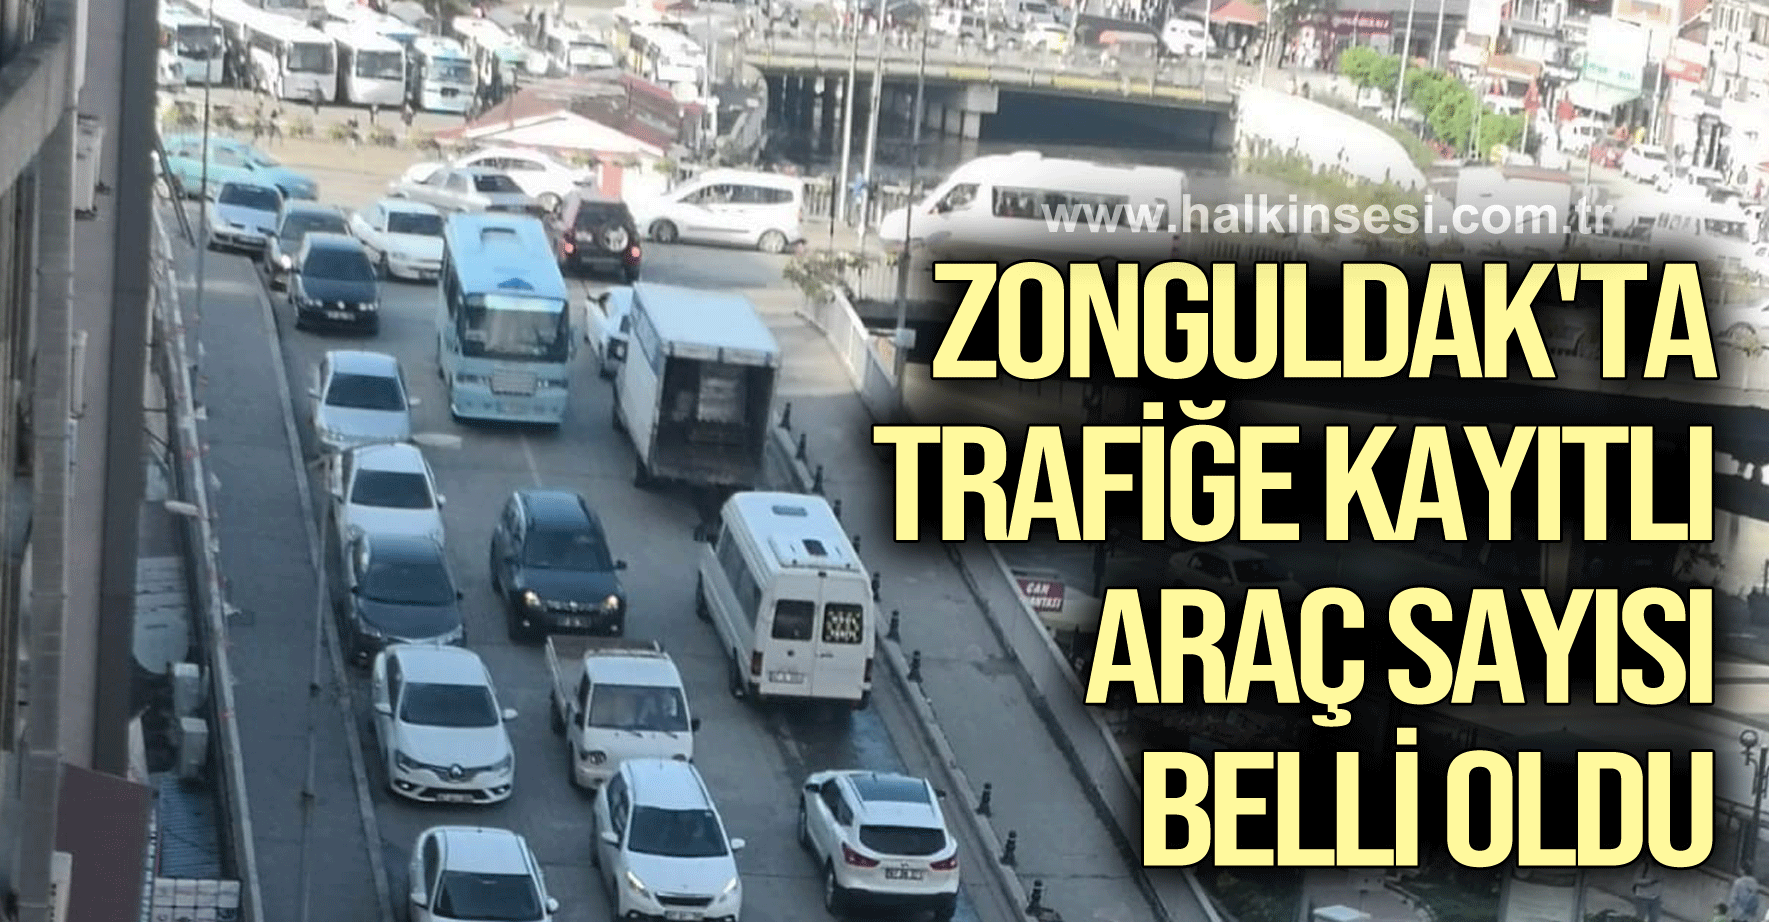 Zonguldak'ta trafiğe kayıtlı araç sayısı belli oldu